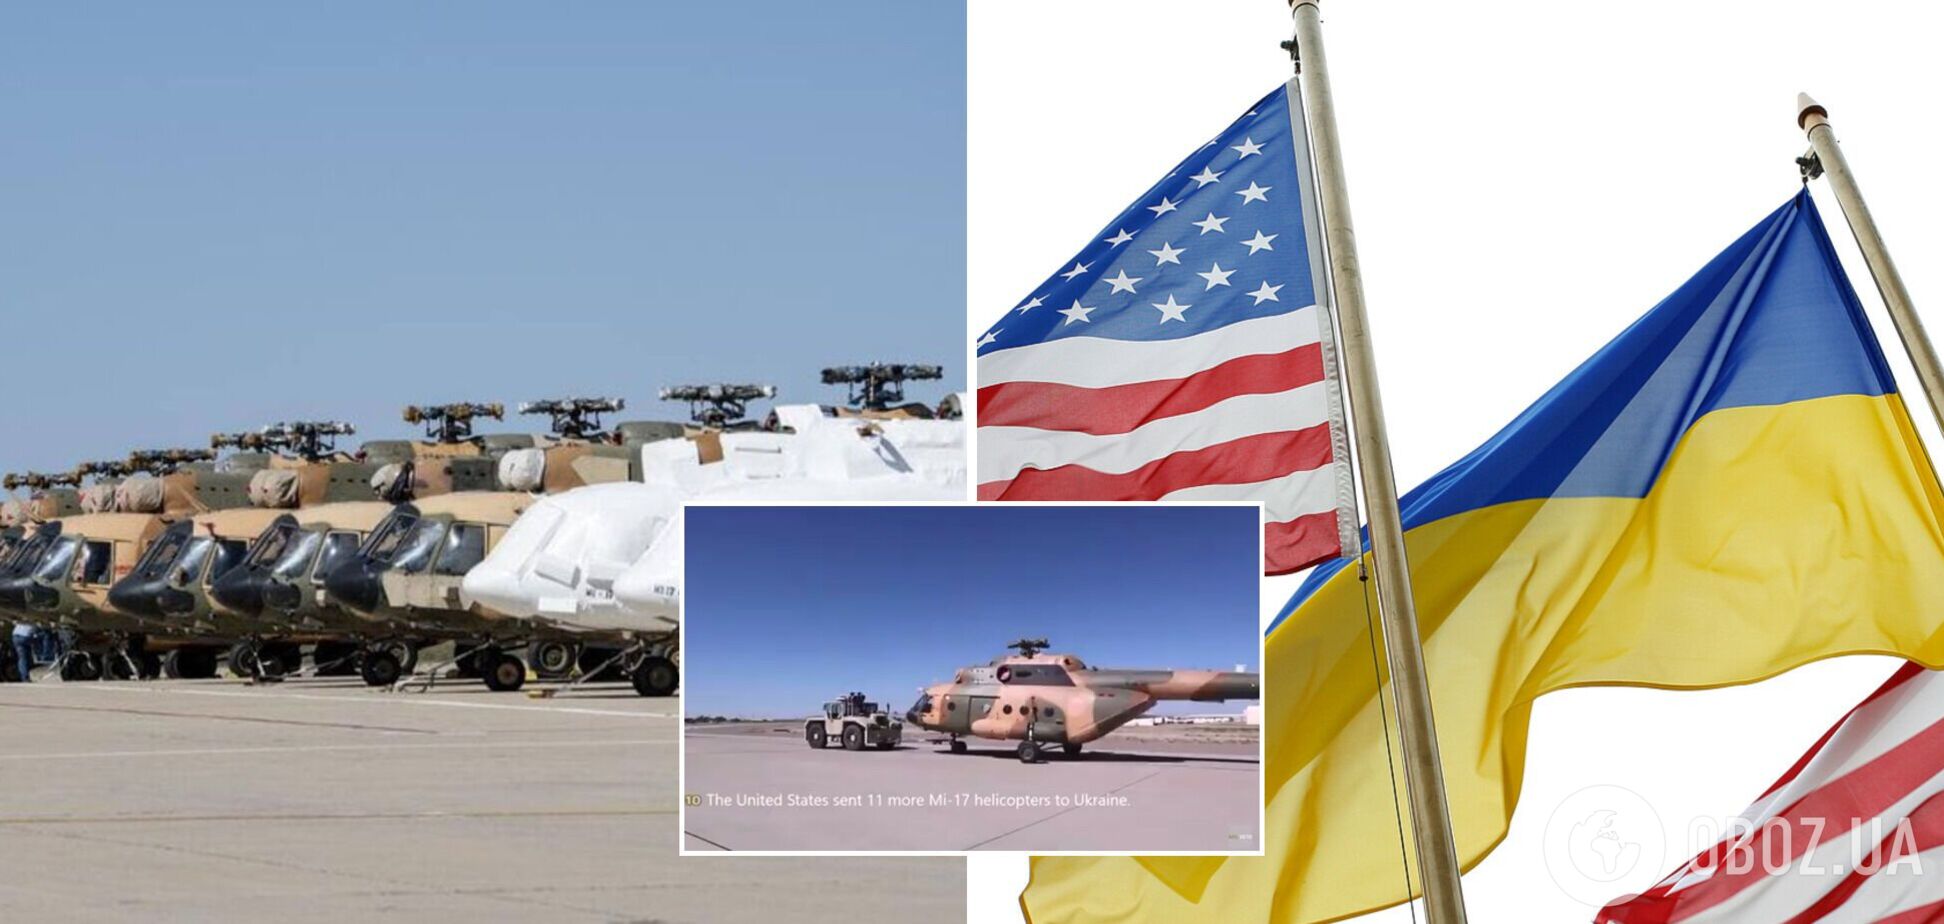 11 вертолетов Ми-17 отправились в Украину с базы в Аризоне. Видео